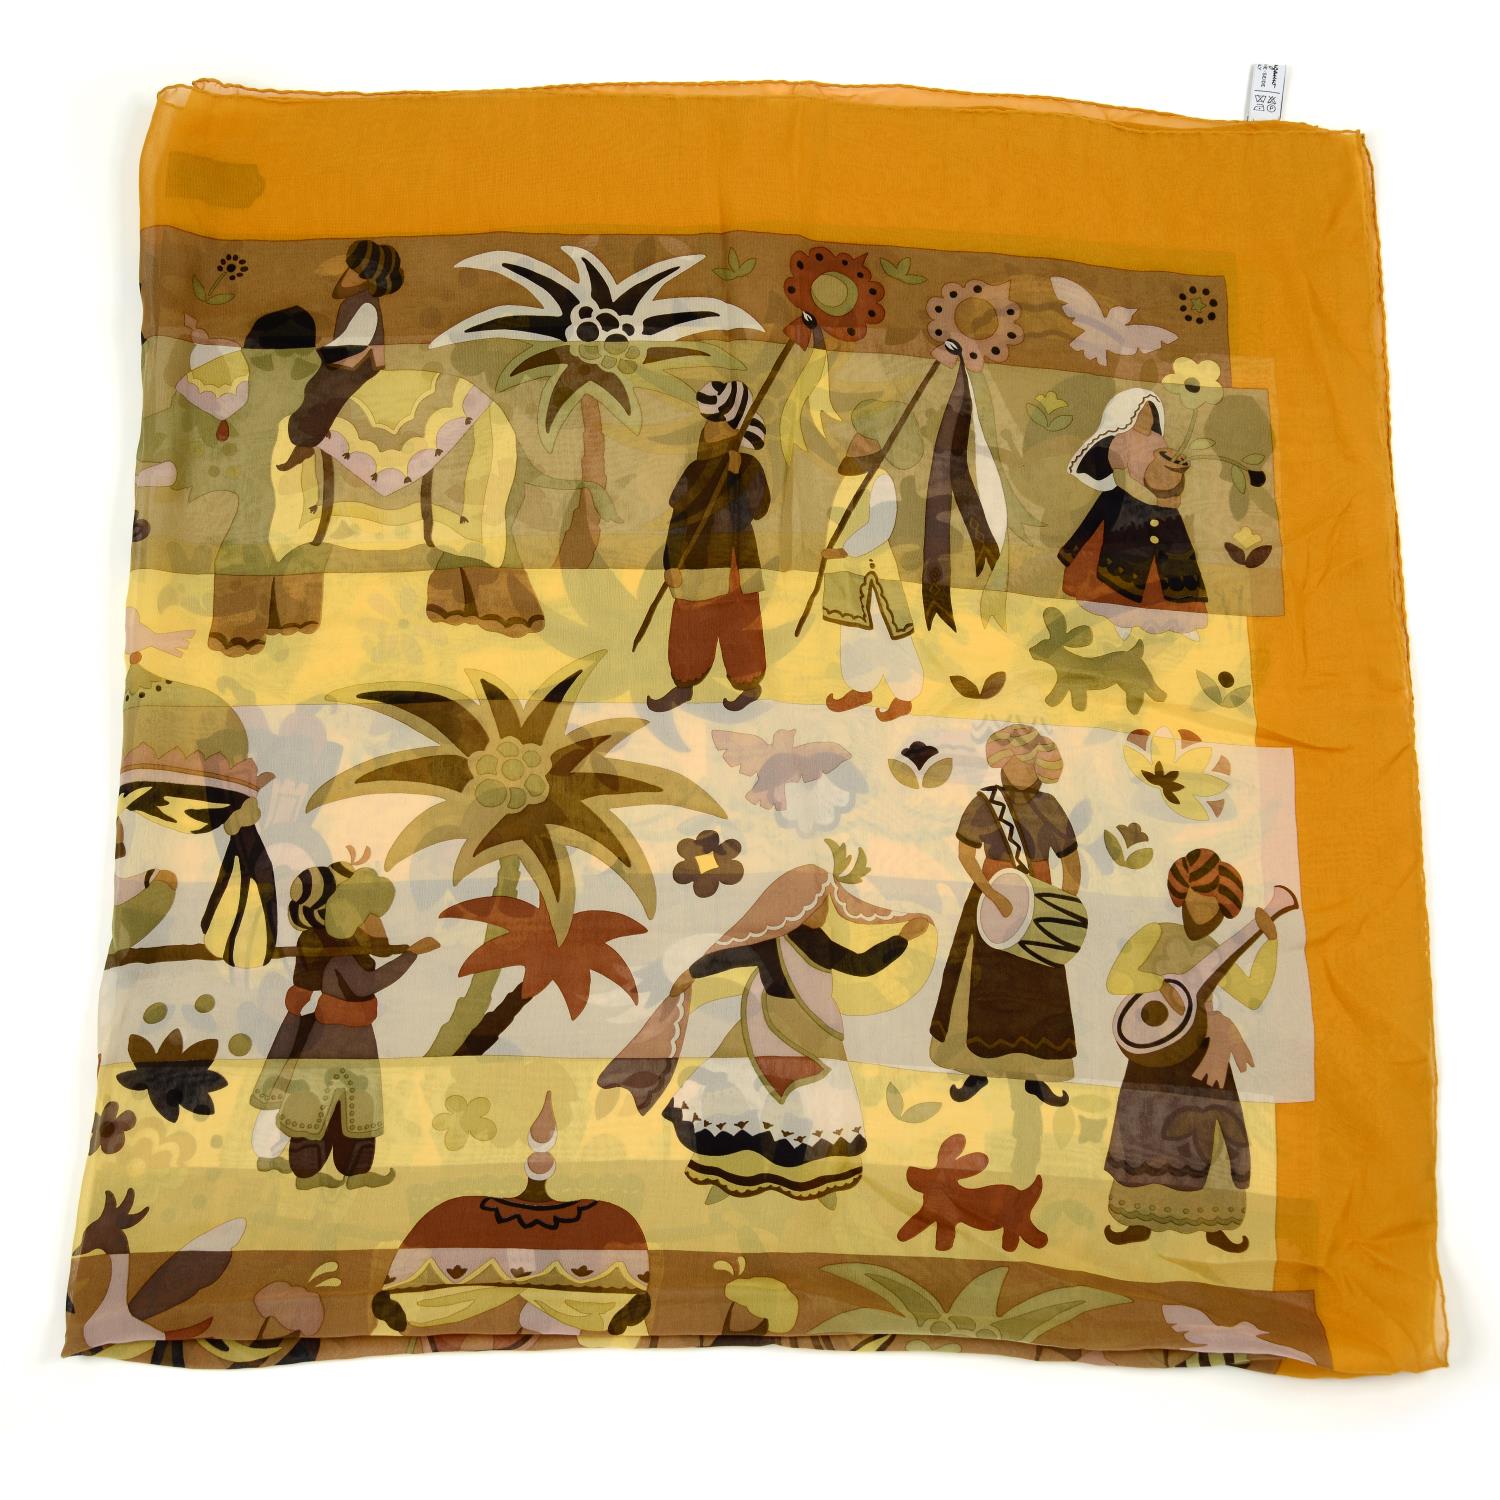 SALVATORE FERRAGAMO - a colourful printed silk scarf. - Image 2 of 3